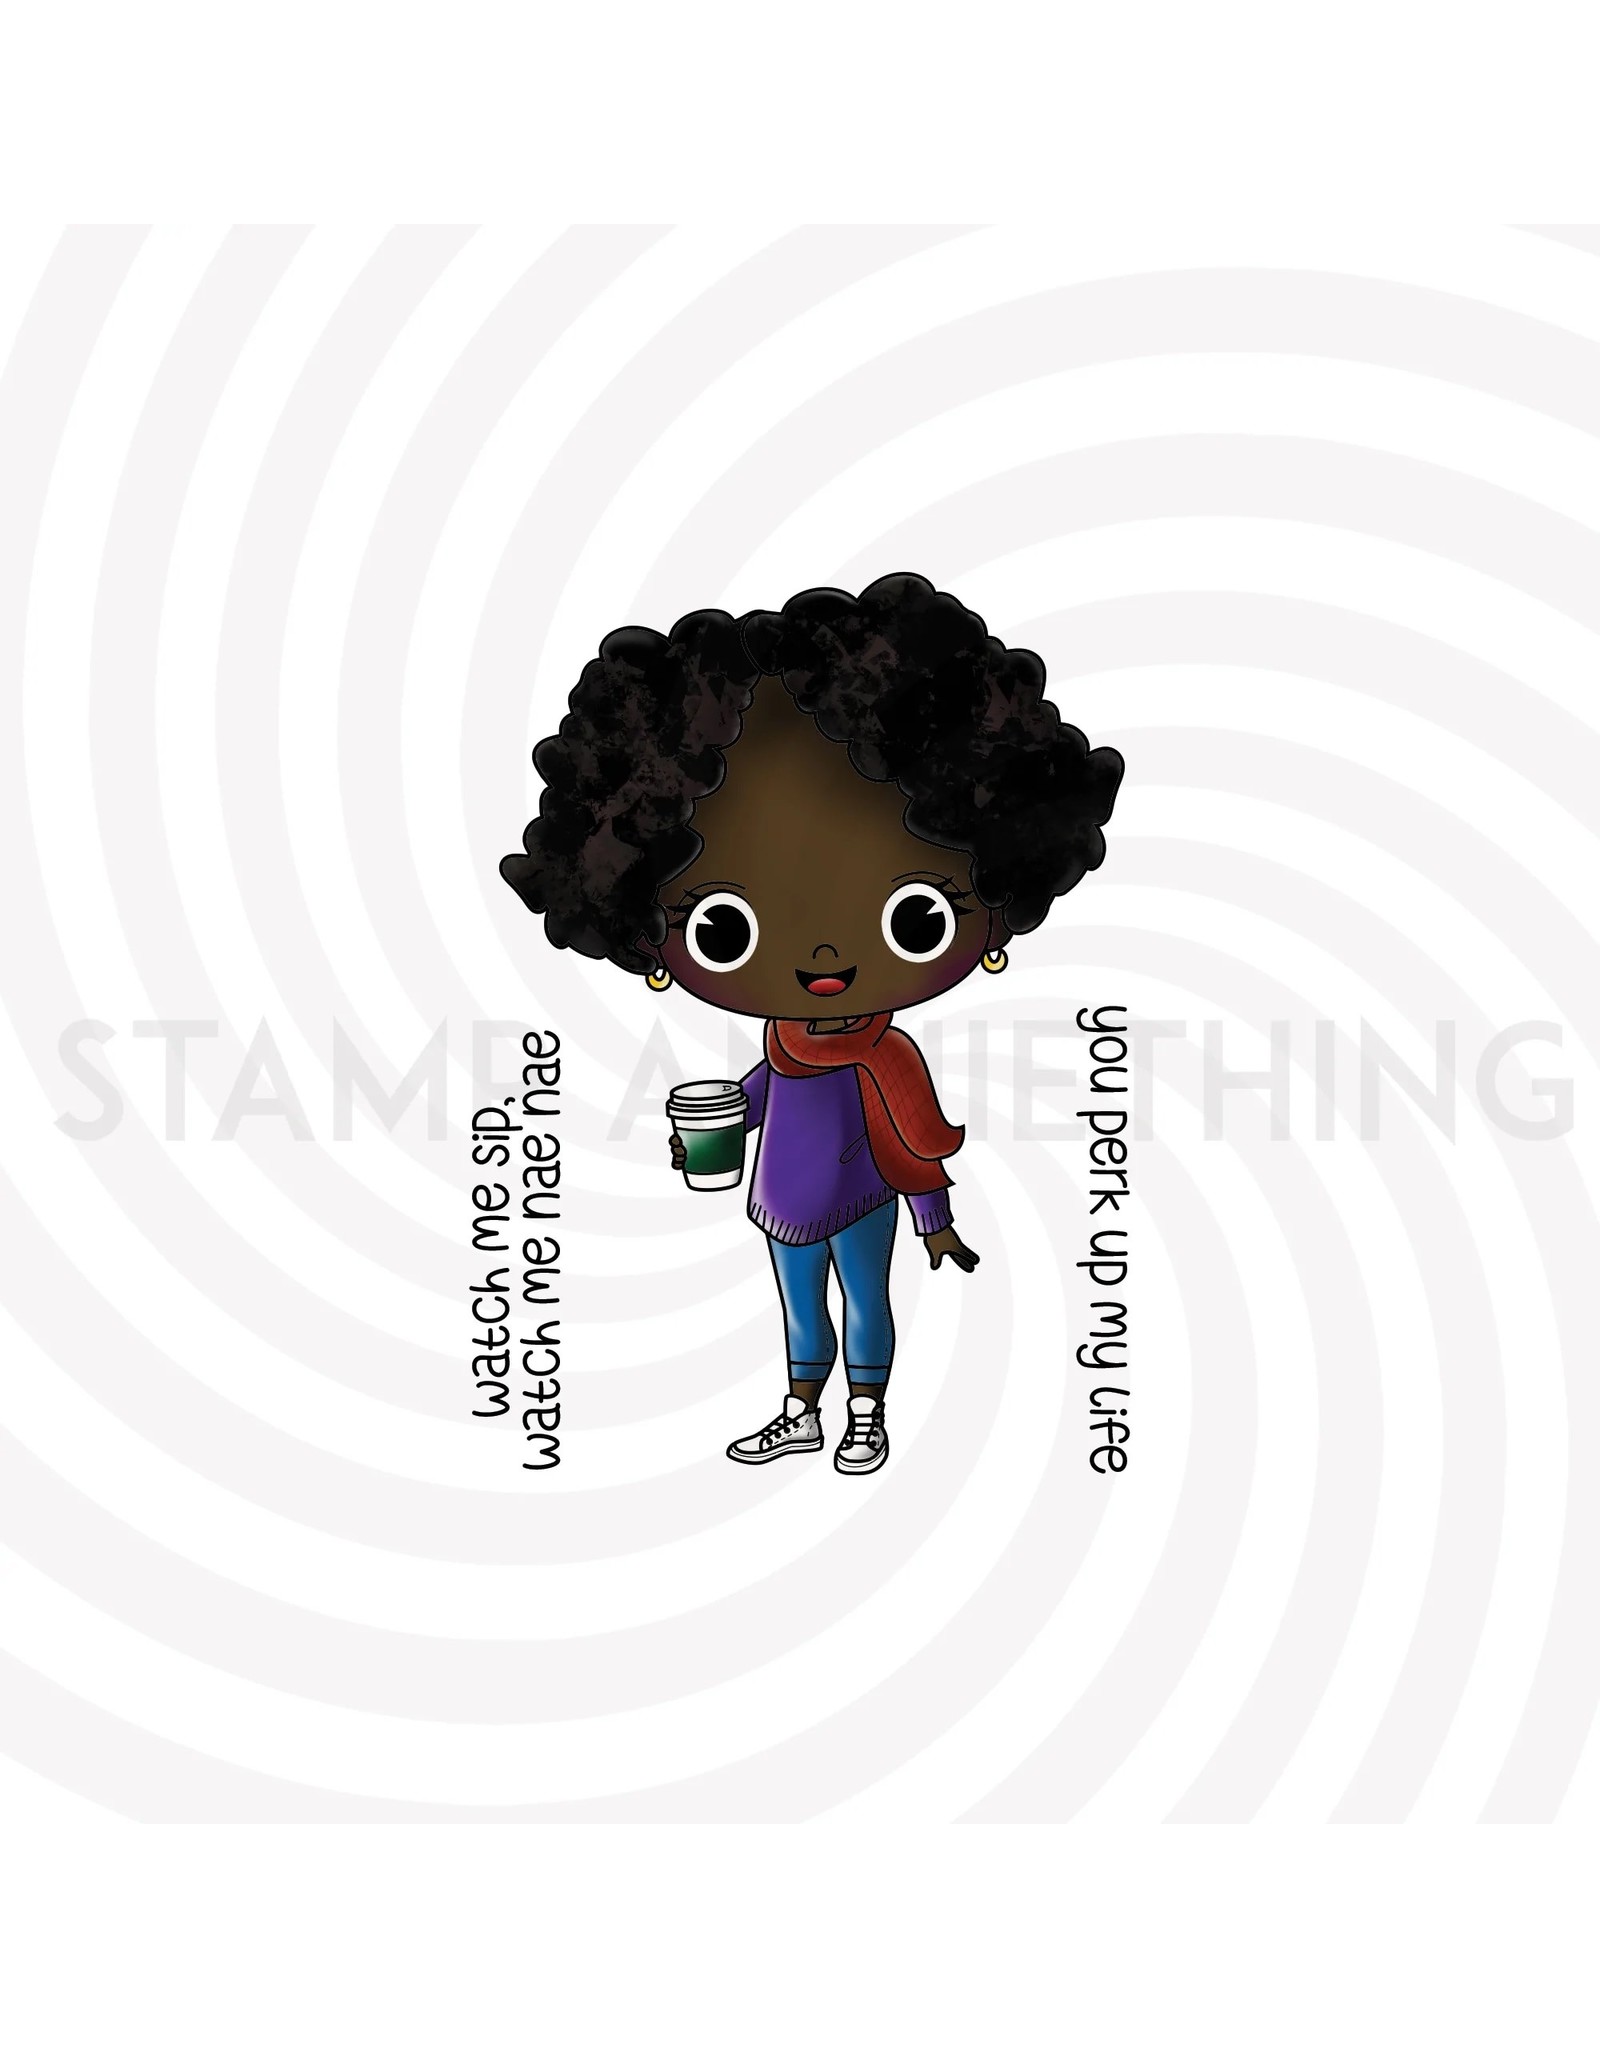 Stamp Anniething Chibi- Kristina Watch Me Sip Stamp